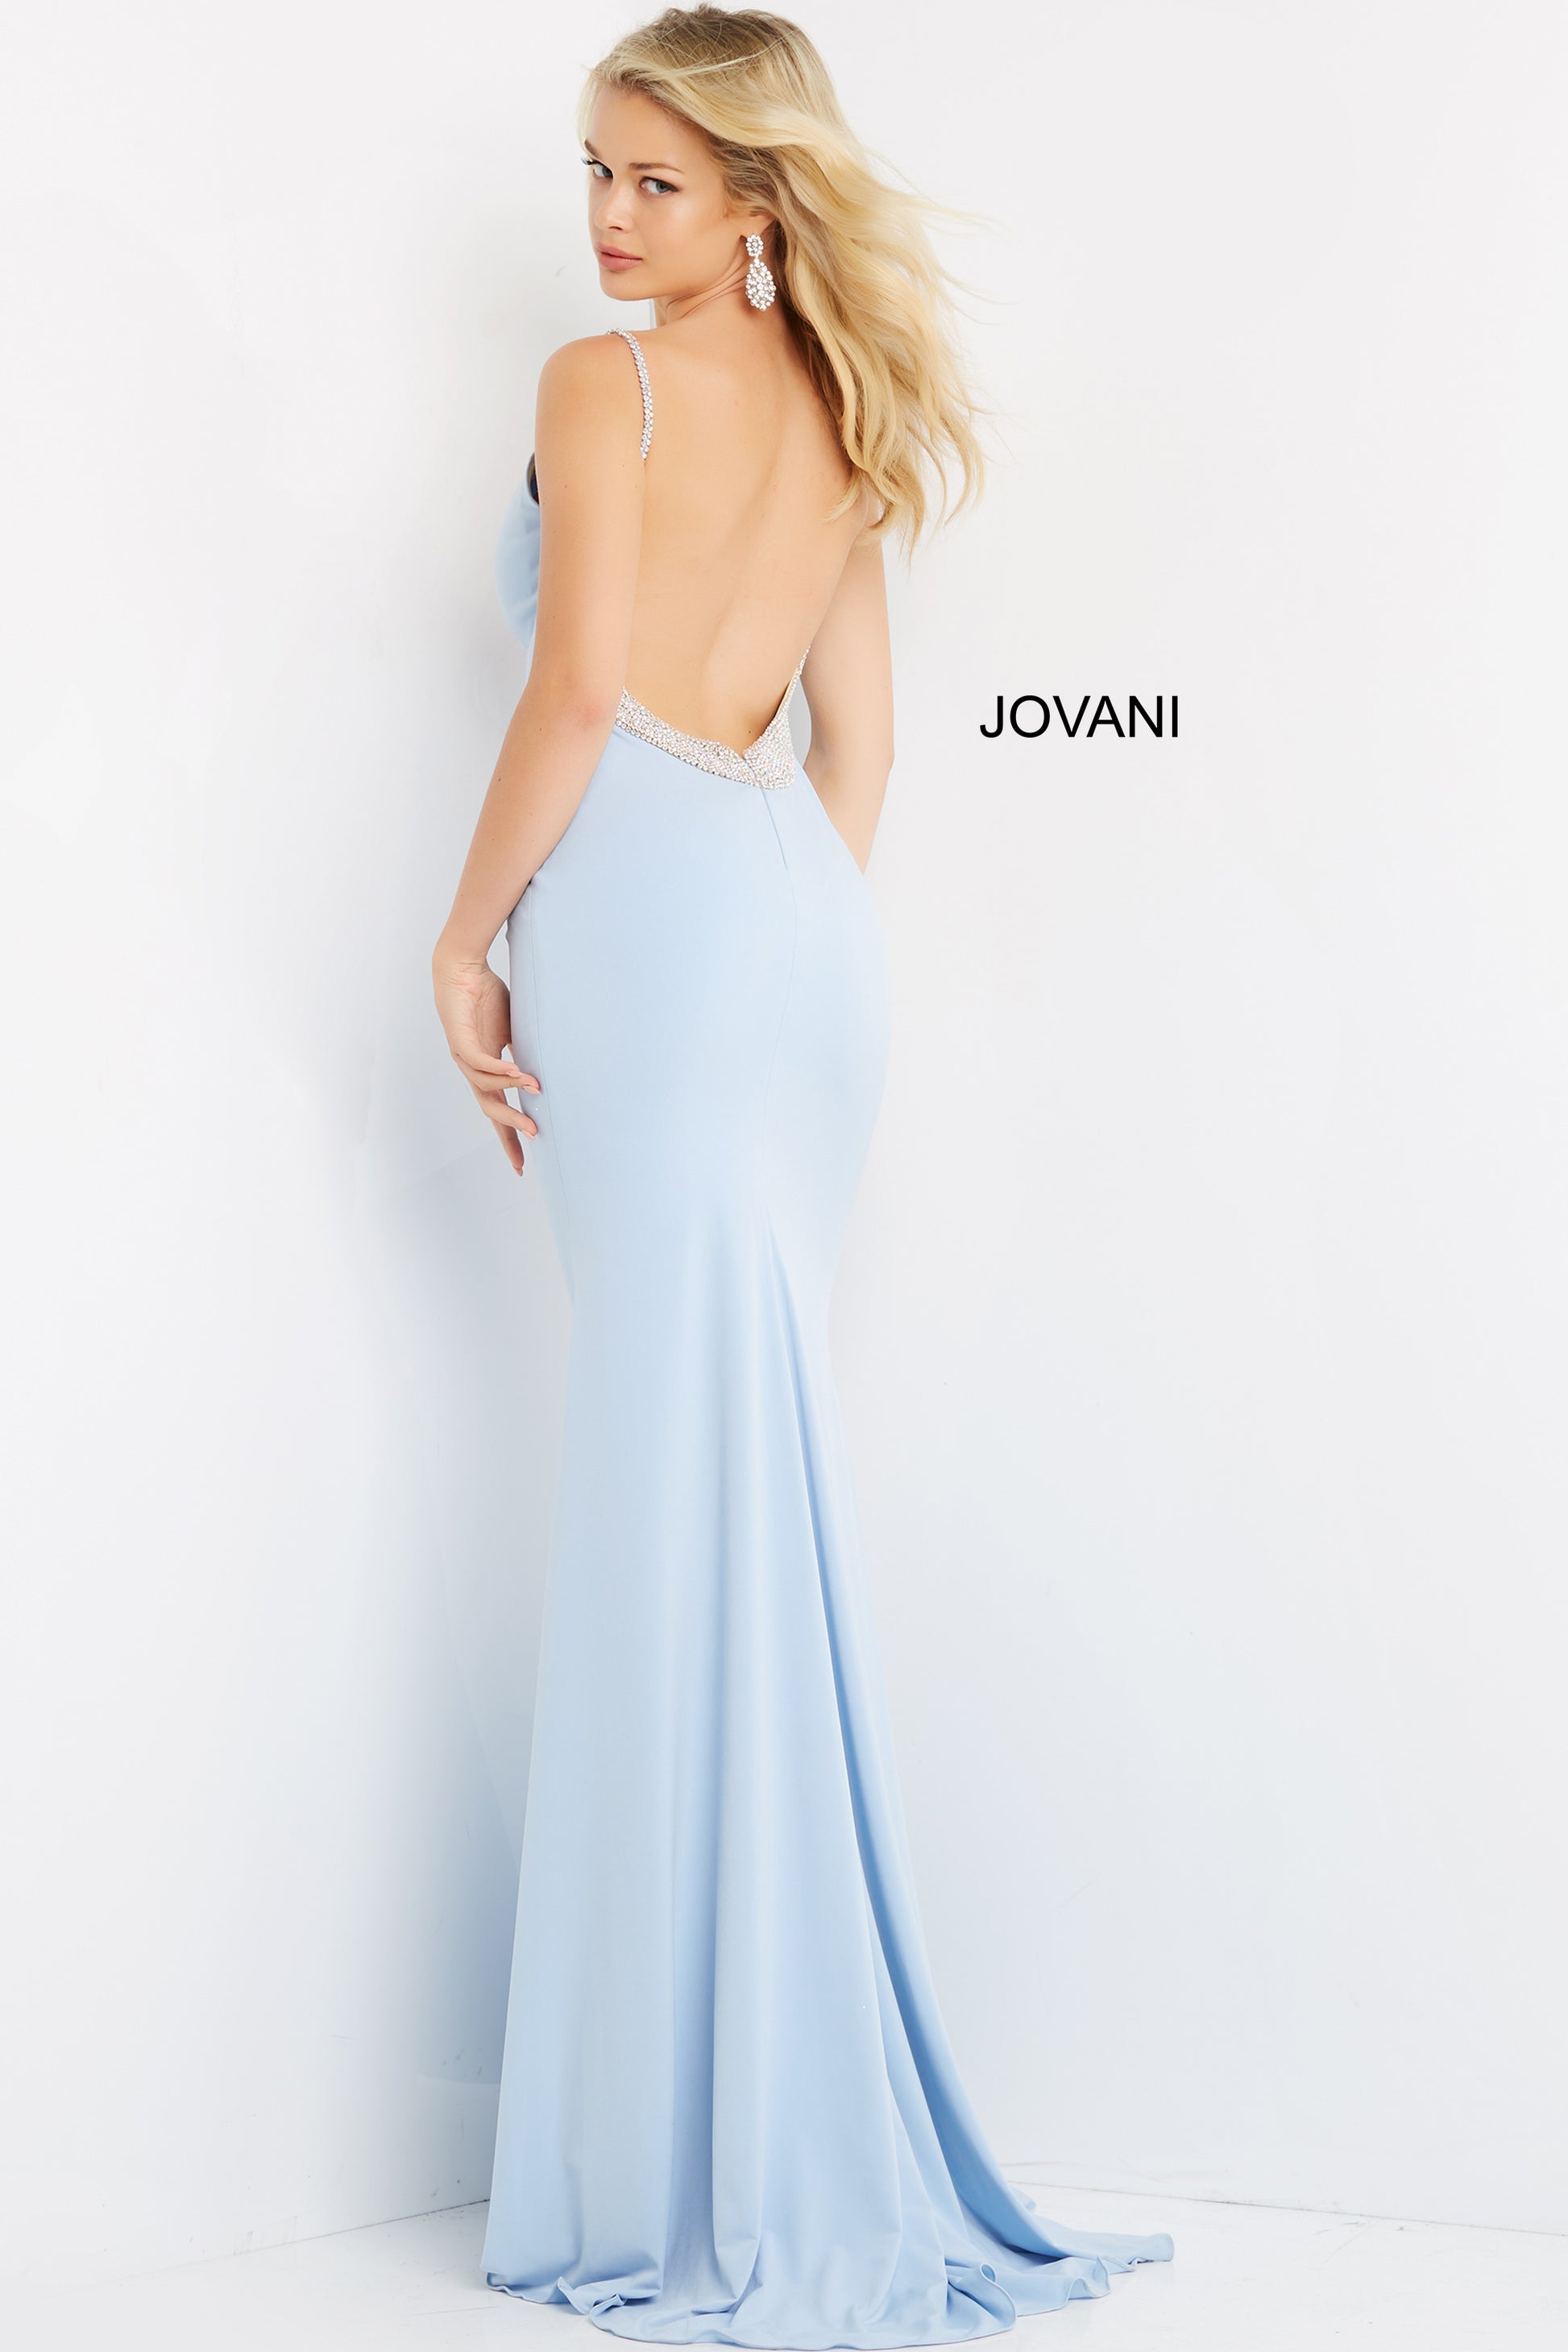 Jovani Dress 22286  White Embellished Tie Back dress